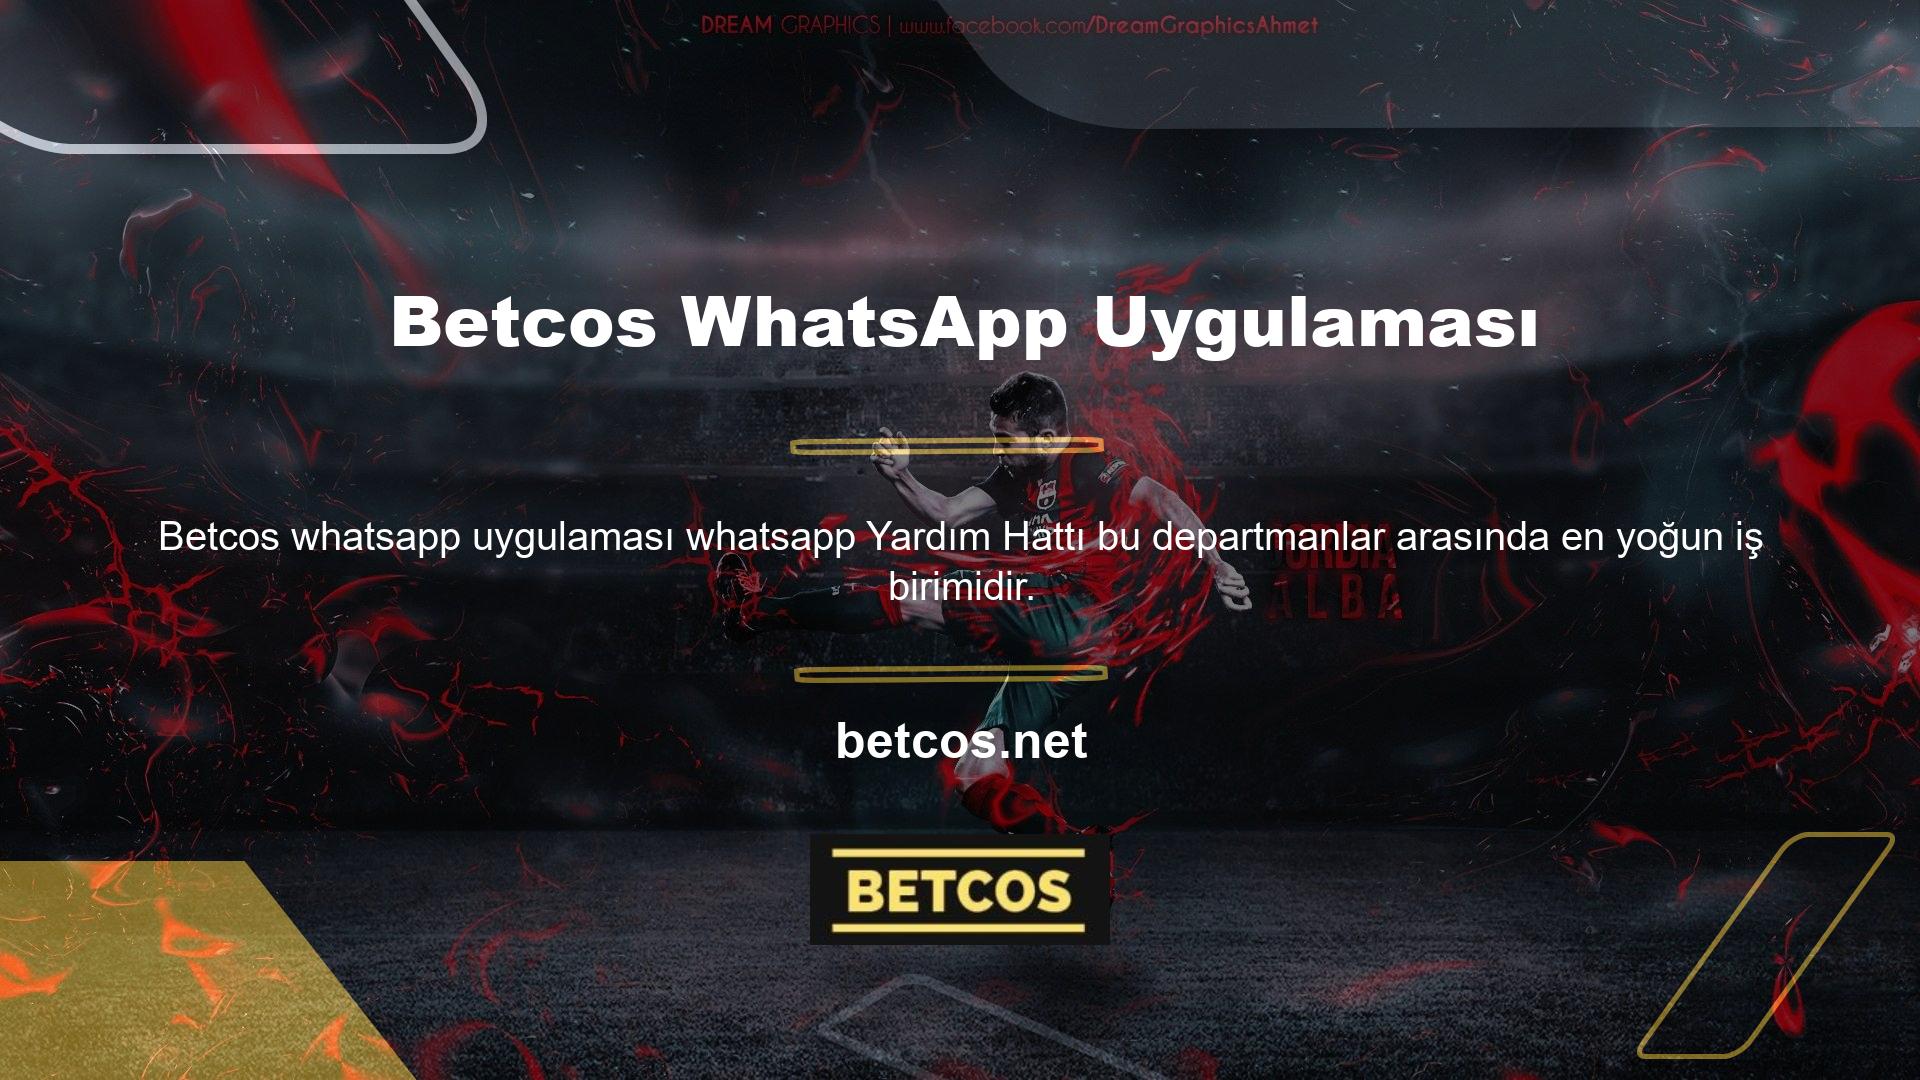 Cevabınız evet ise sitenin WhatsApp hattına nasıl bağlanabilirim? Betcos WhatsApp uygulamasının oyunculara faydaları nelerdir?Şu anda bug'a bağlanmak için herhangi bir üyelik gerekmiyor